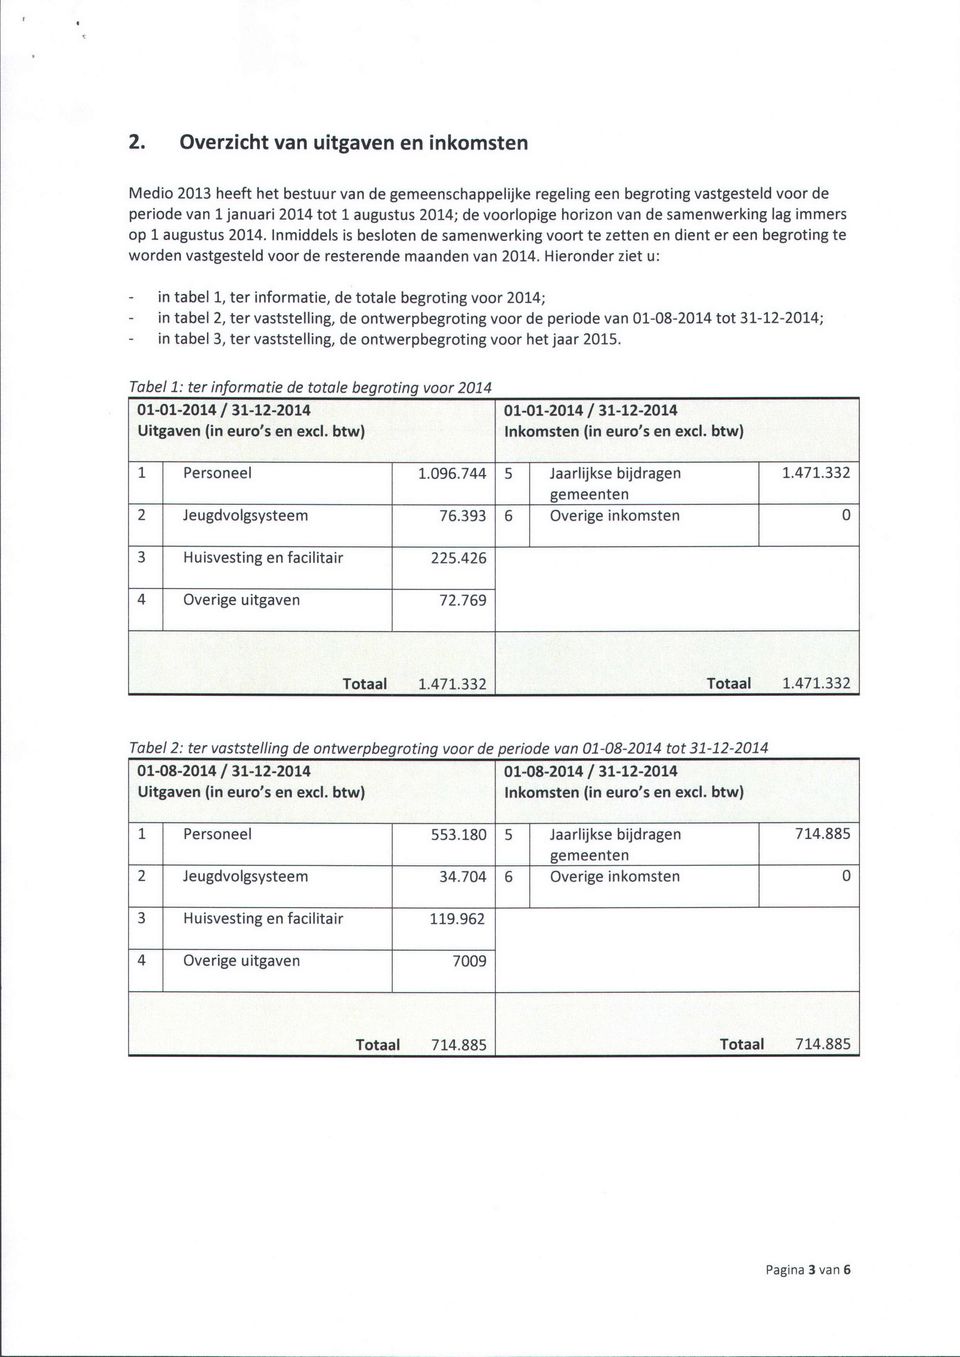 Hieronder ziet u: in tabel 1, ter informatie, de totale begroting voor 2014; in tabel 2, ter vaststelling, de ontwerpbegroting voor de periode van 01-08-2014 tot 31-12-2014; in tabel 3, ter